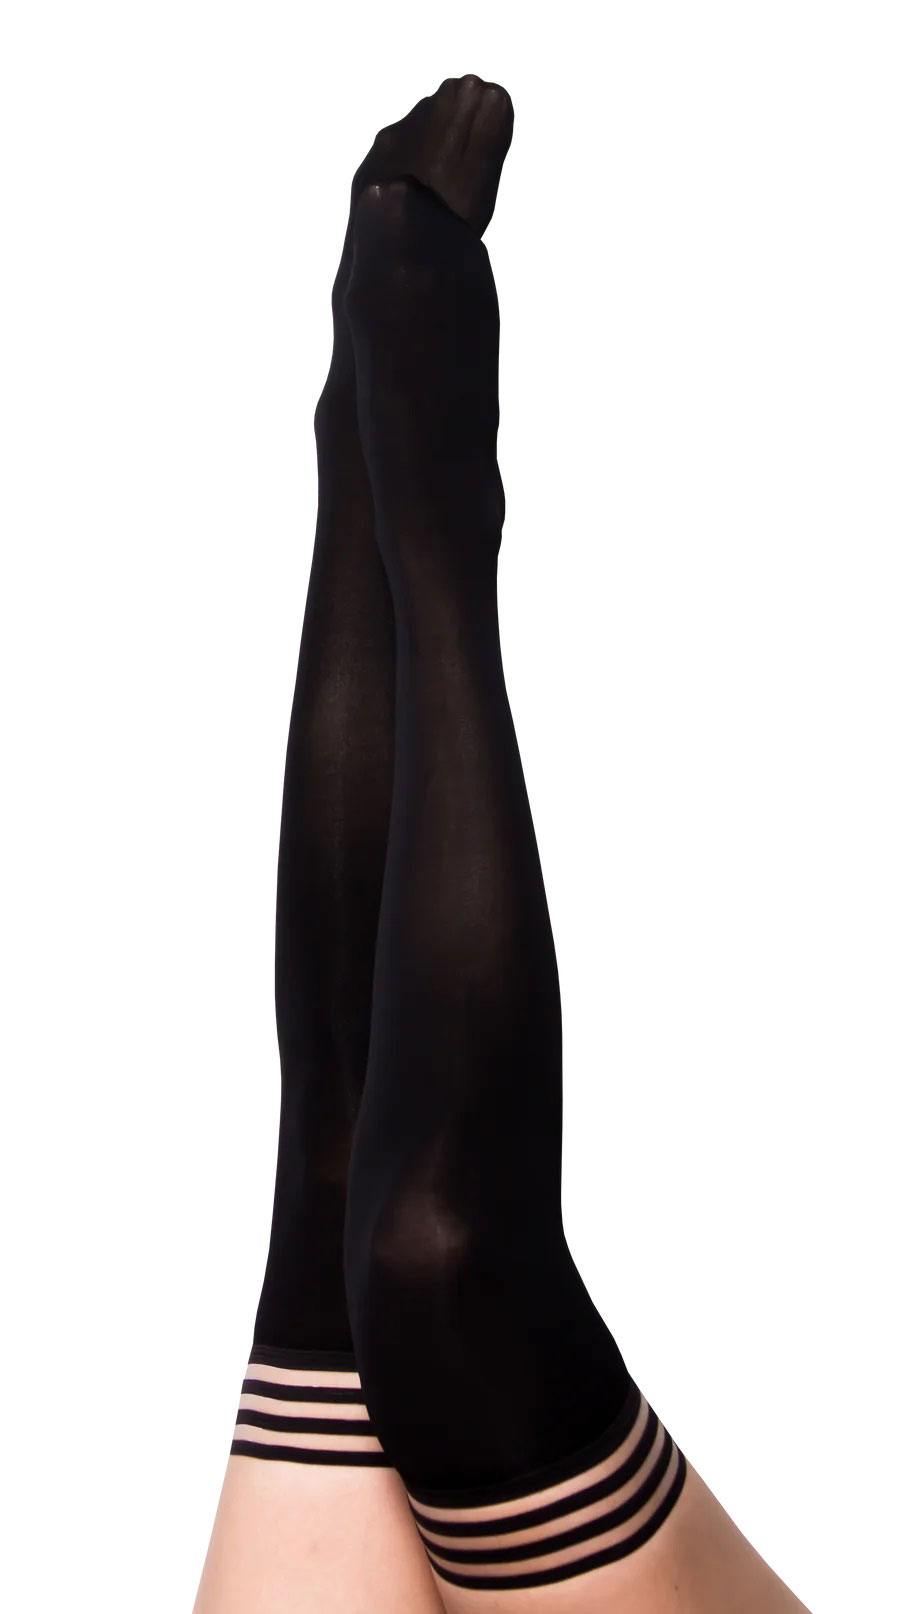 Danielle - Black Opaque Thigh High - Size B - Black